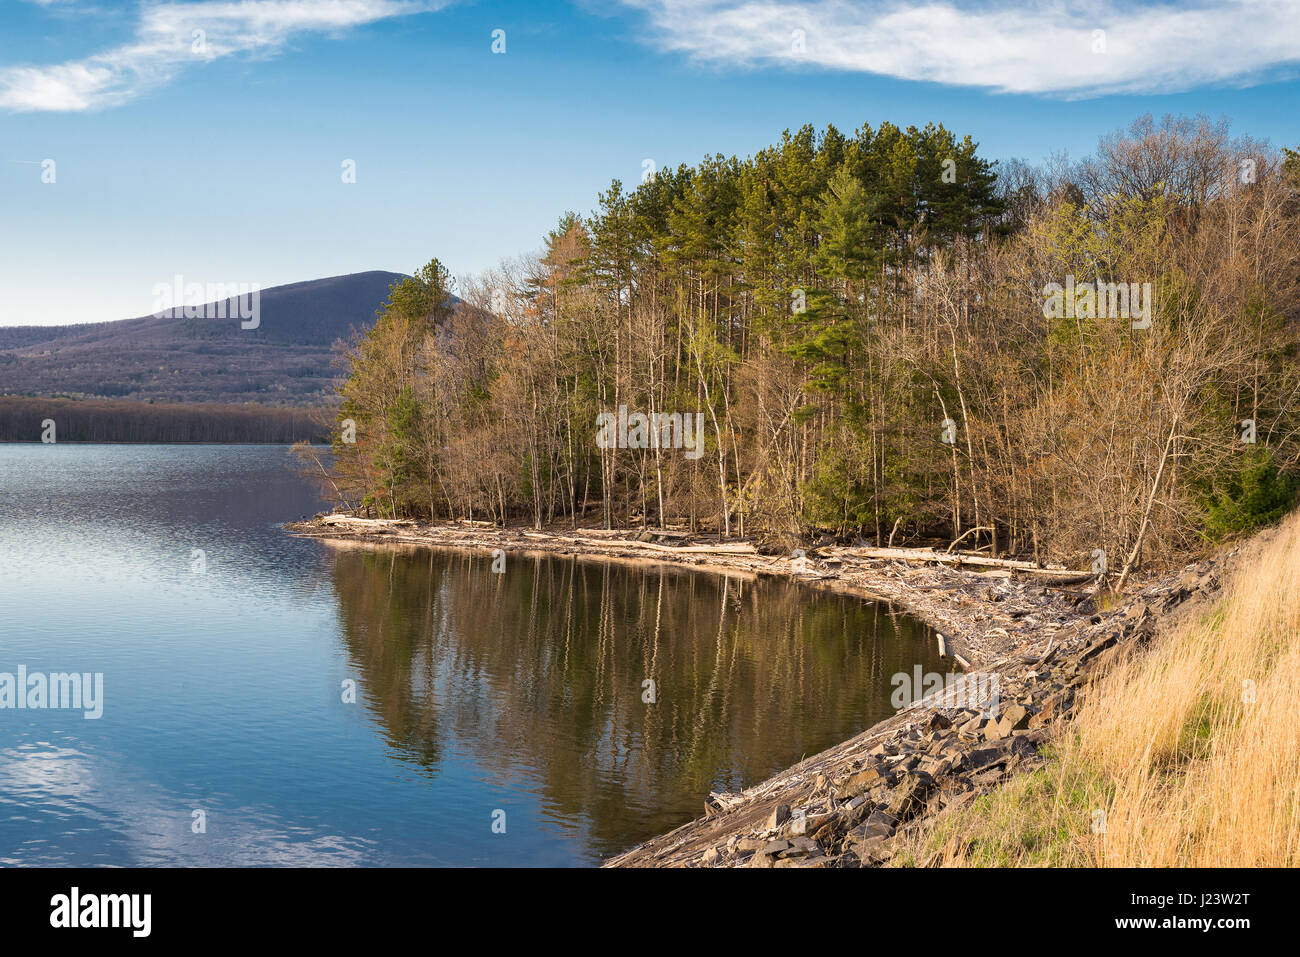 Küste des ashokan Reservoir an den goldenen Stunde in den Catskill Mountains des Hudson Valley von New York, ein Teil der New York City Wasserversorgung. Stockfoto